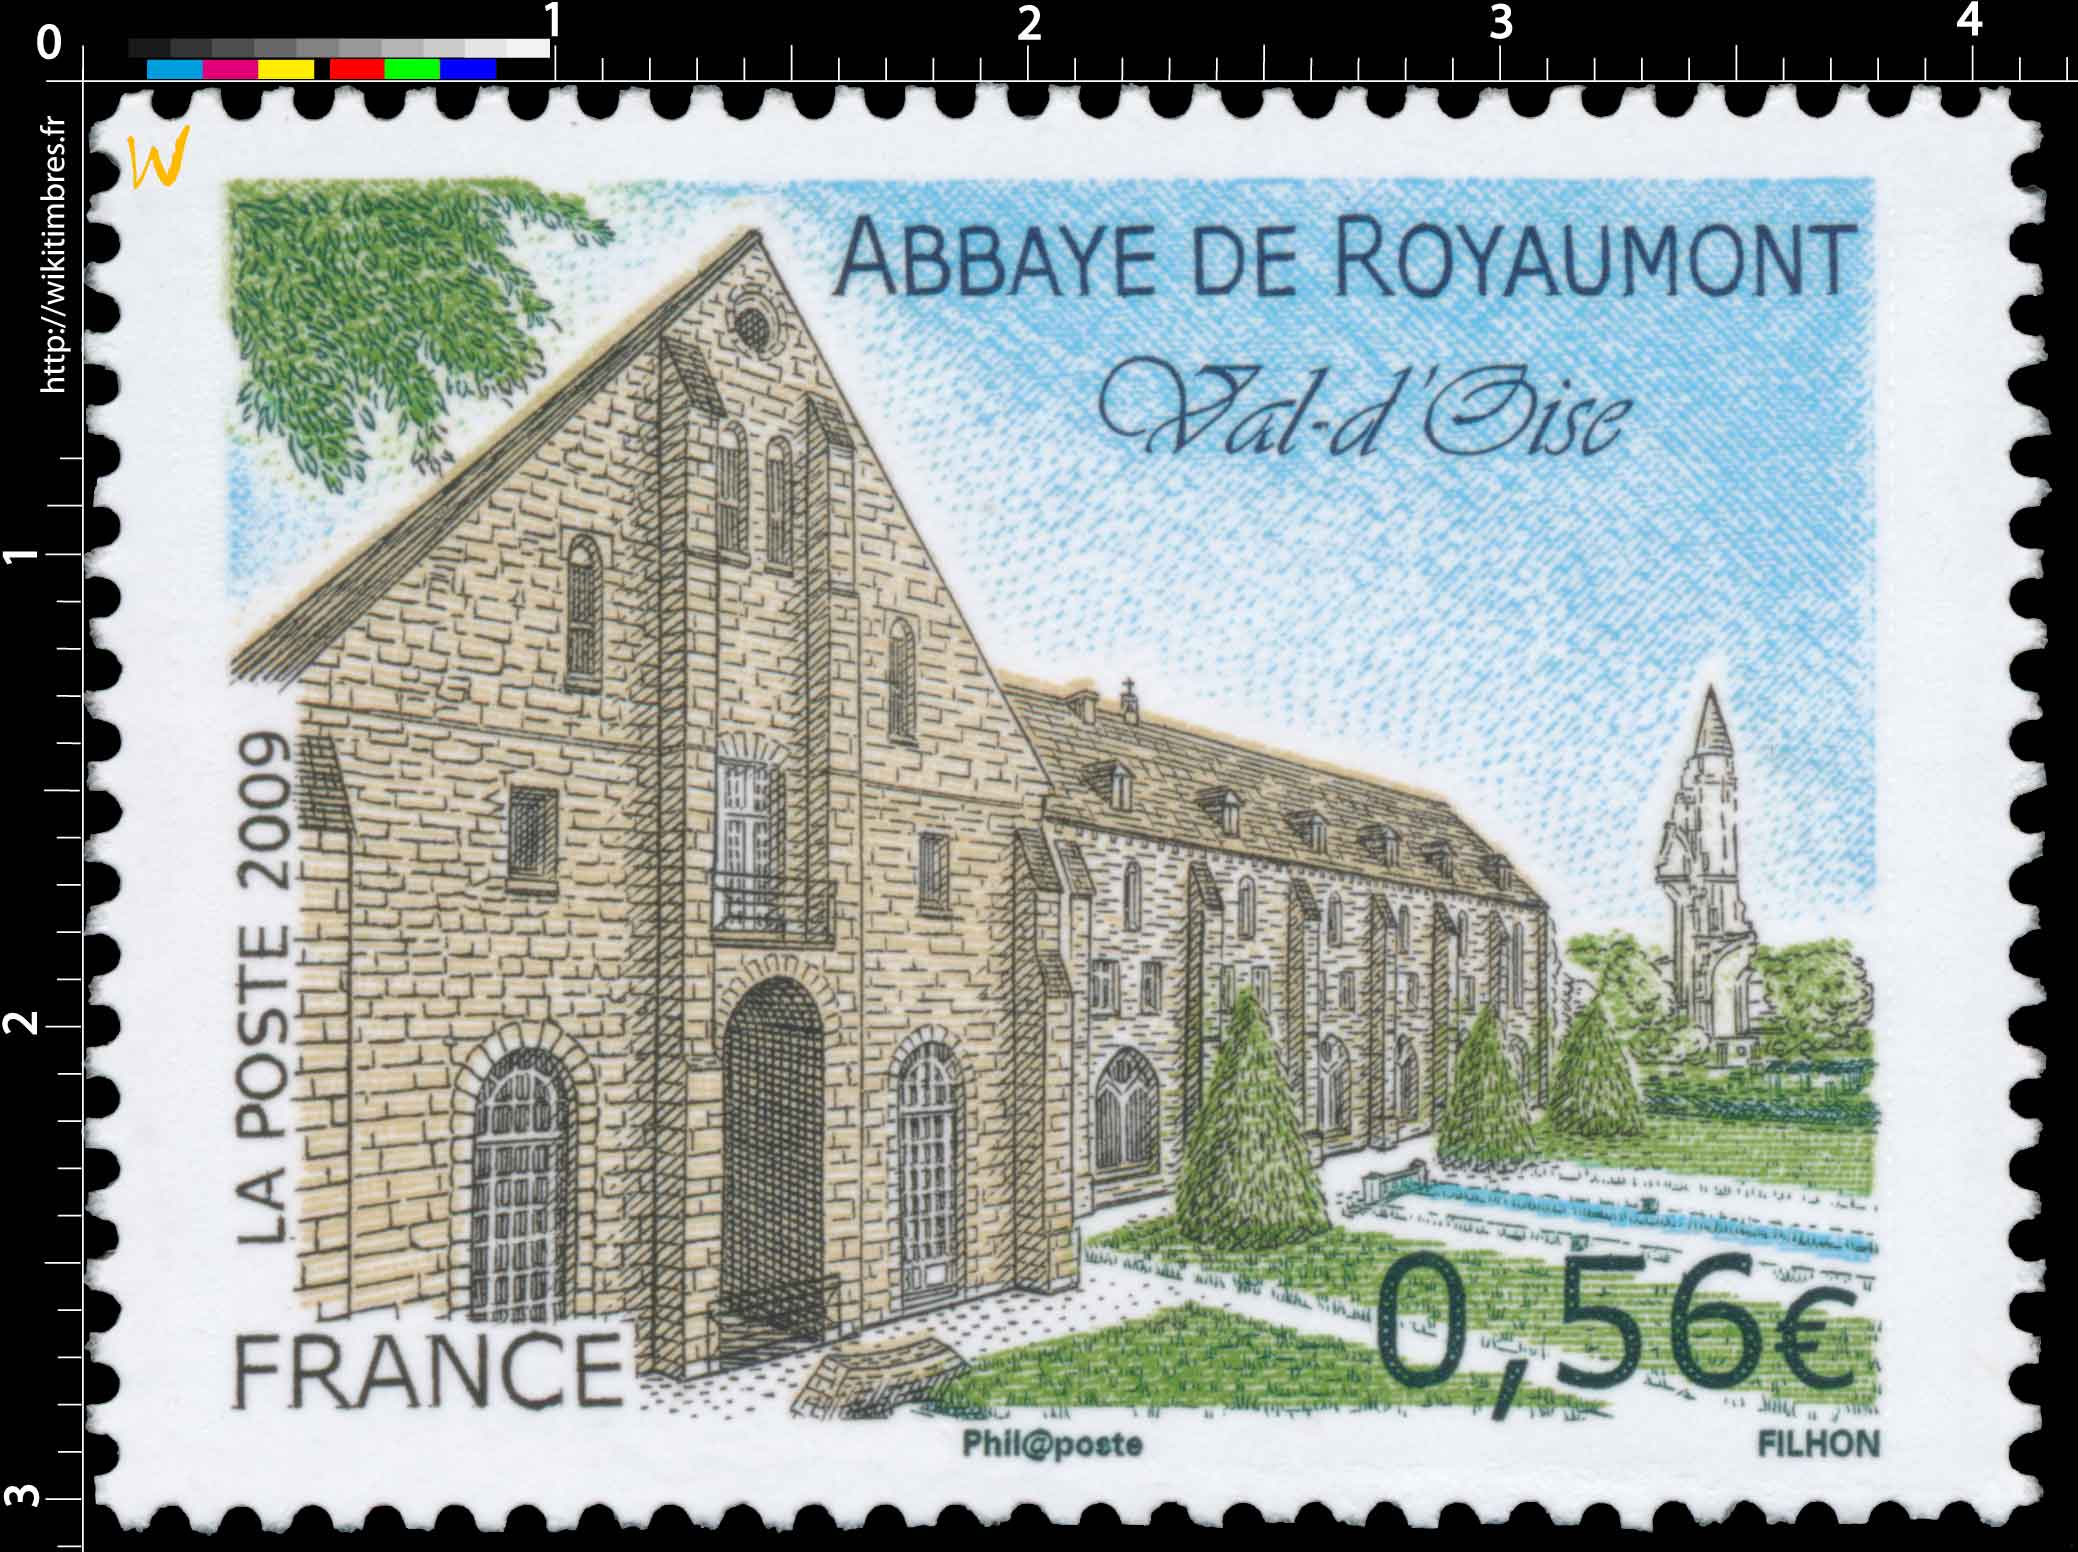 2009 ABBAYE DE ROYAUMONT Val d'Oise